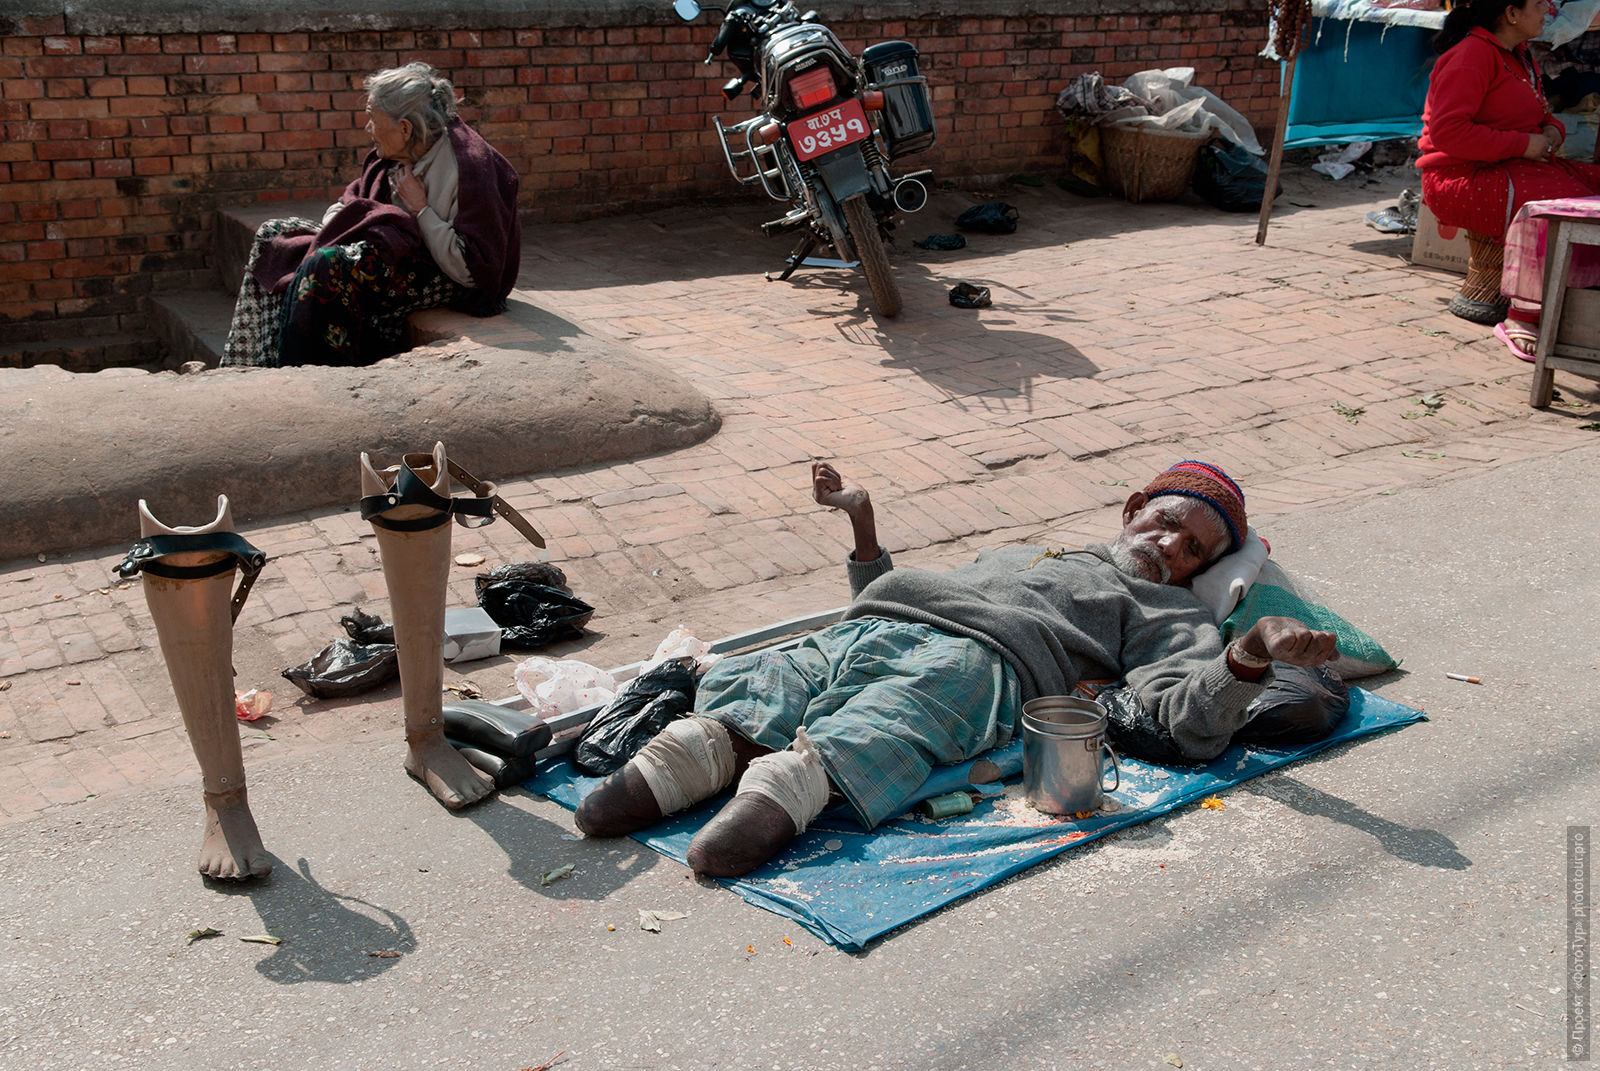 Жанровая фотосъемка на улицах Катманду. Фототур по Непалу с русскоязычными гидами.